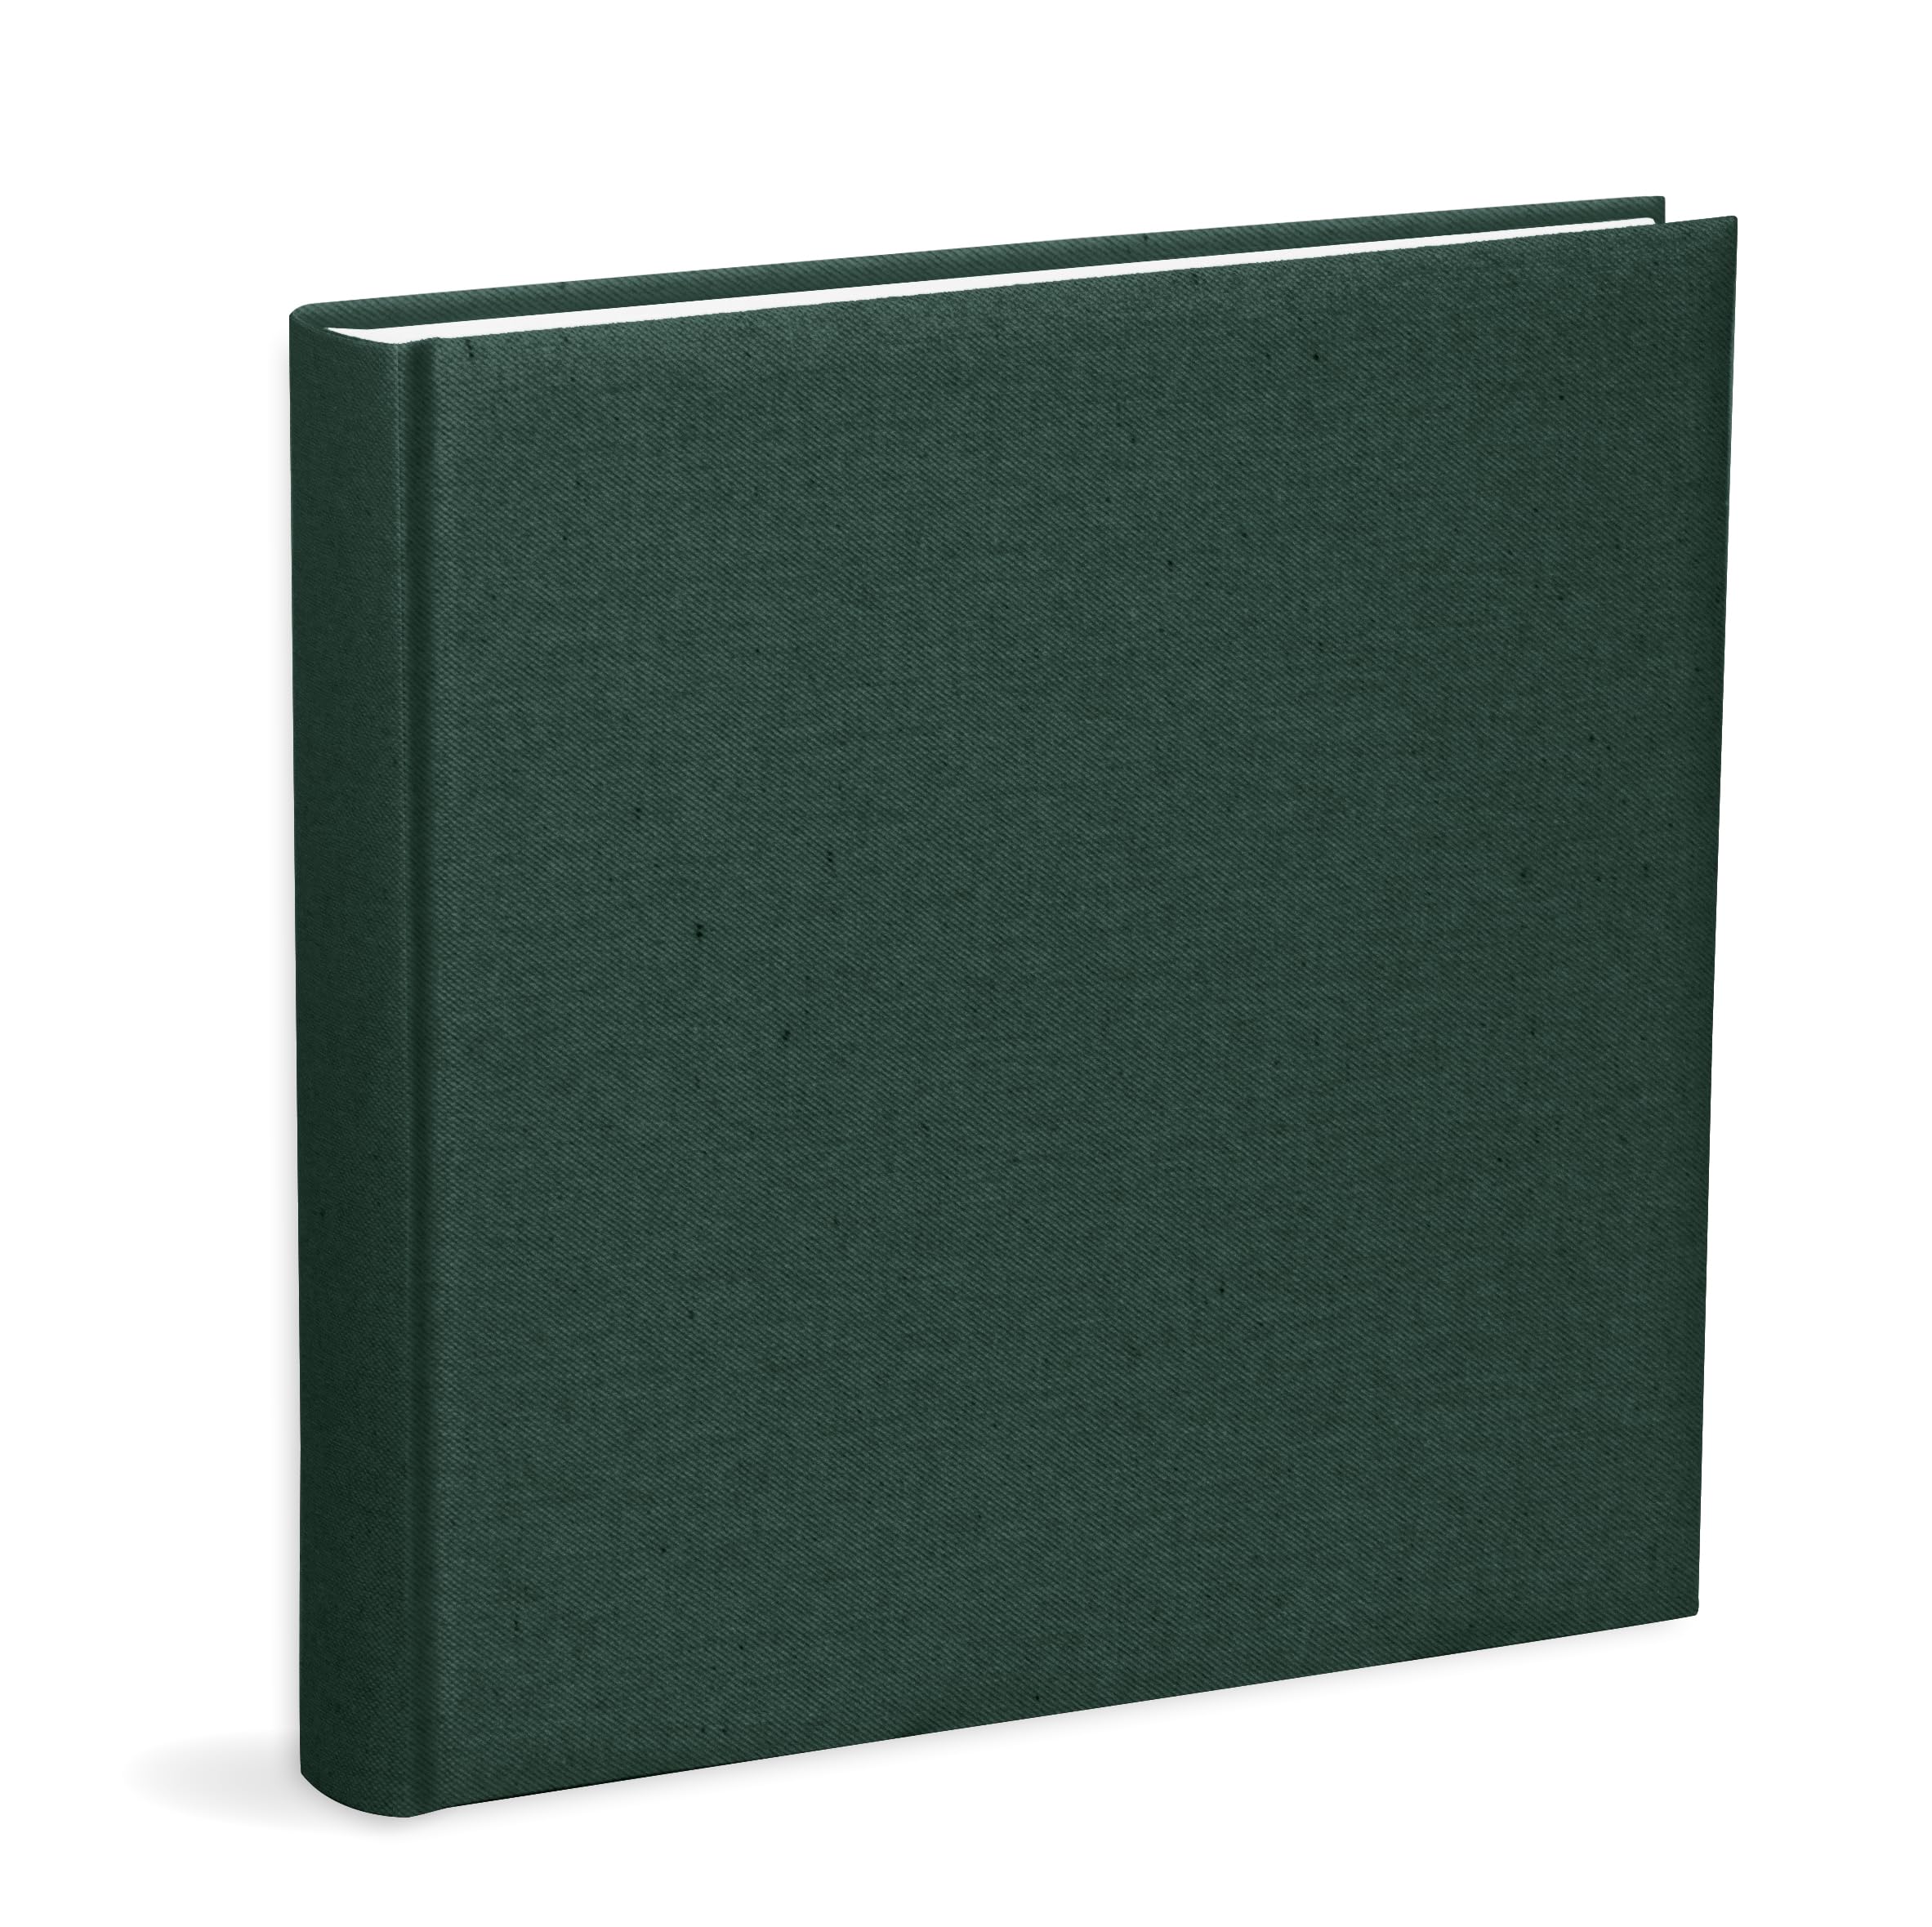 Mareli Fotoalbum, 31 x 31, Einband aus grünem Baumwollstoff, 80 Seiten mit Seidenpapier